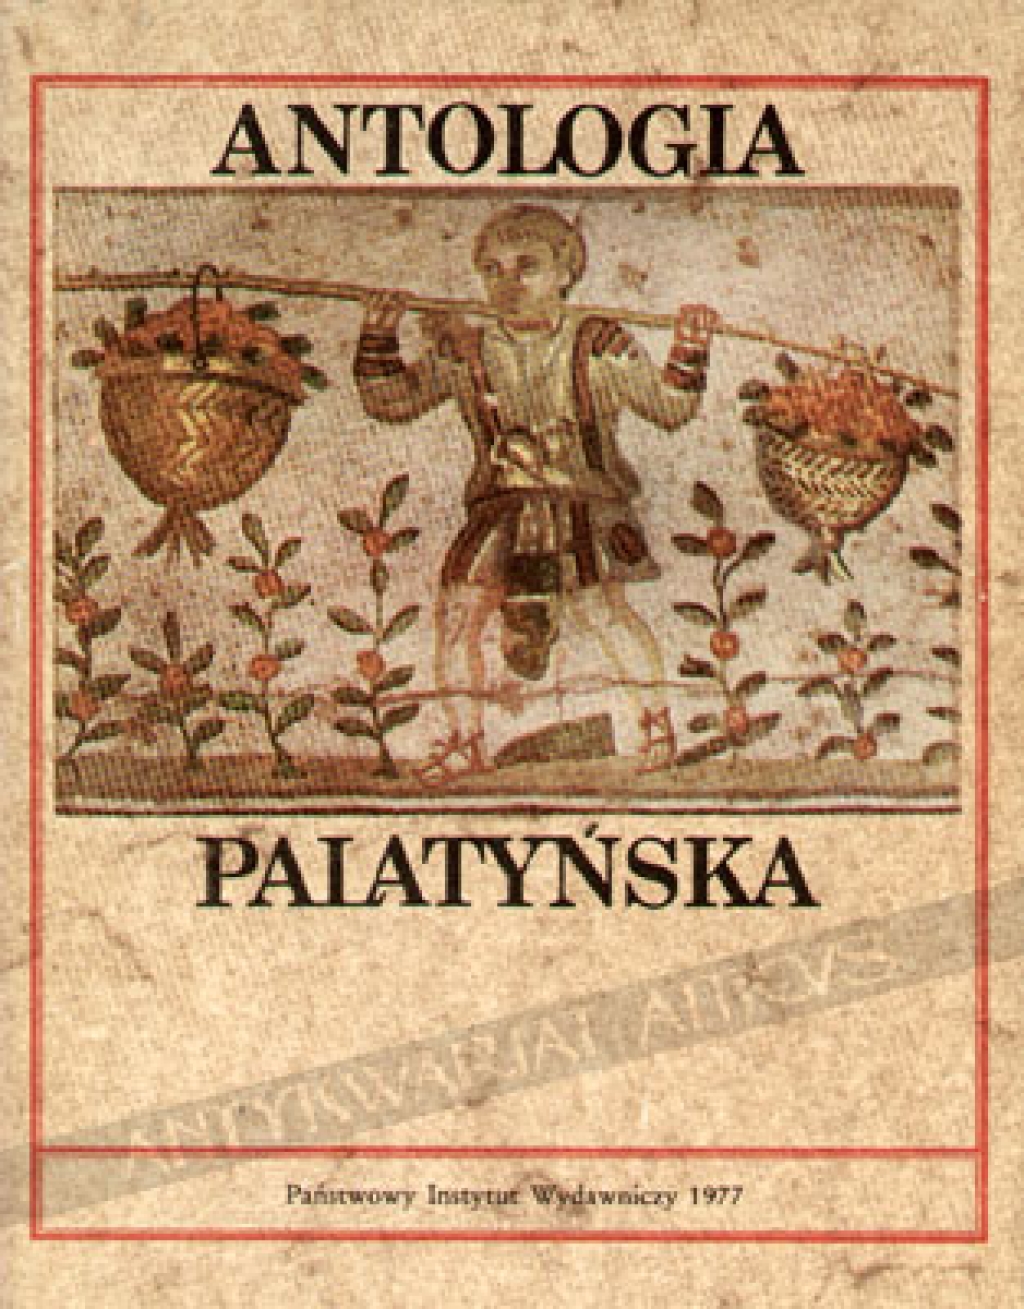 Antologia palatyńska